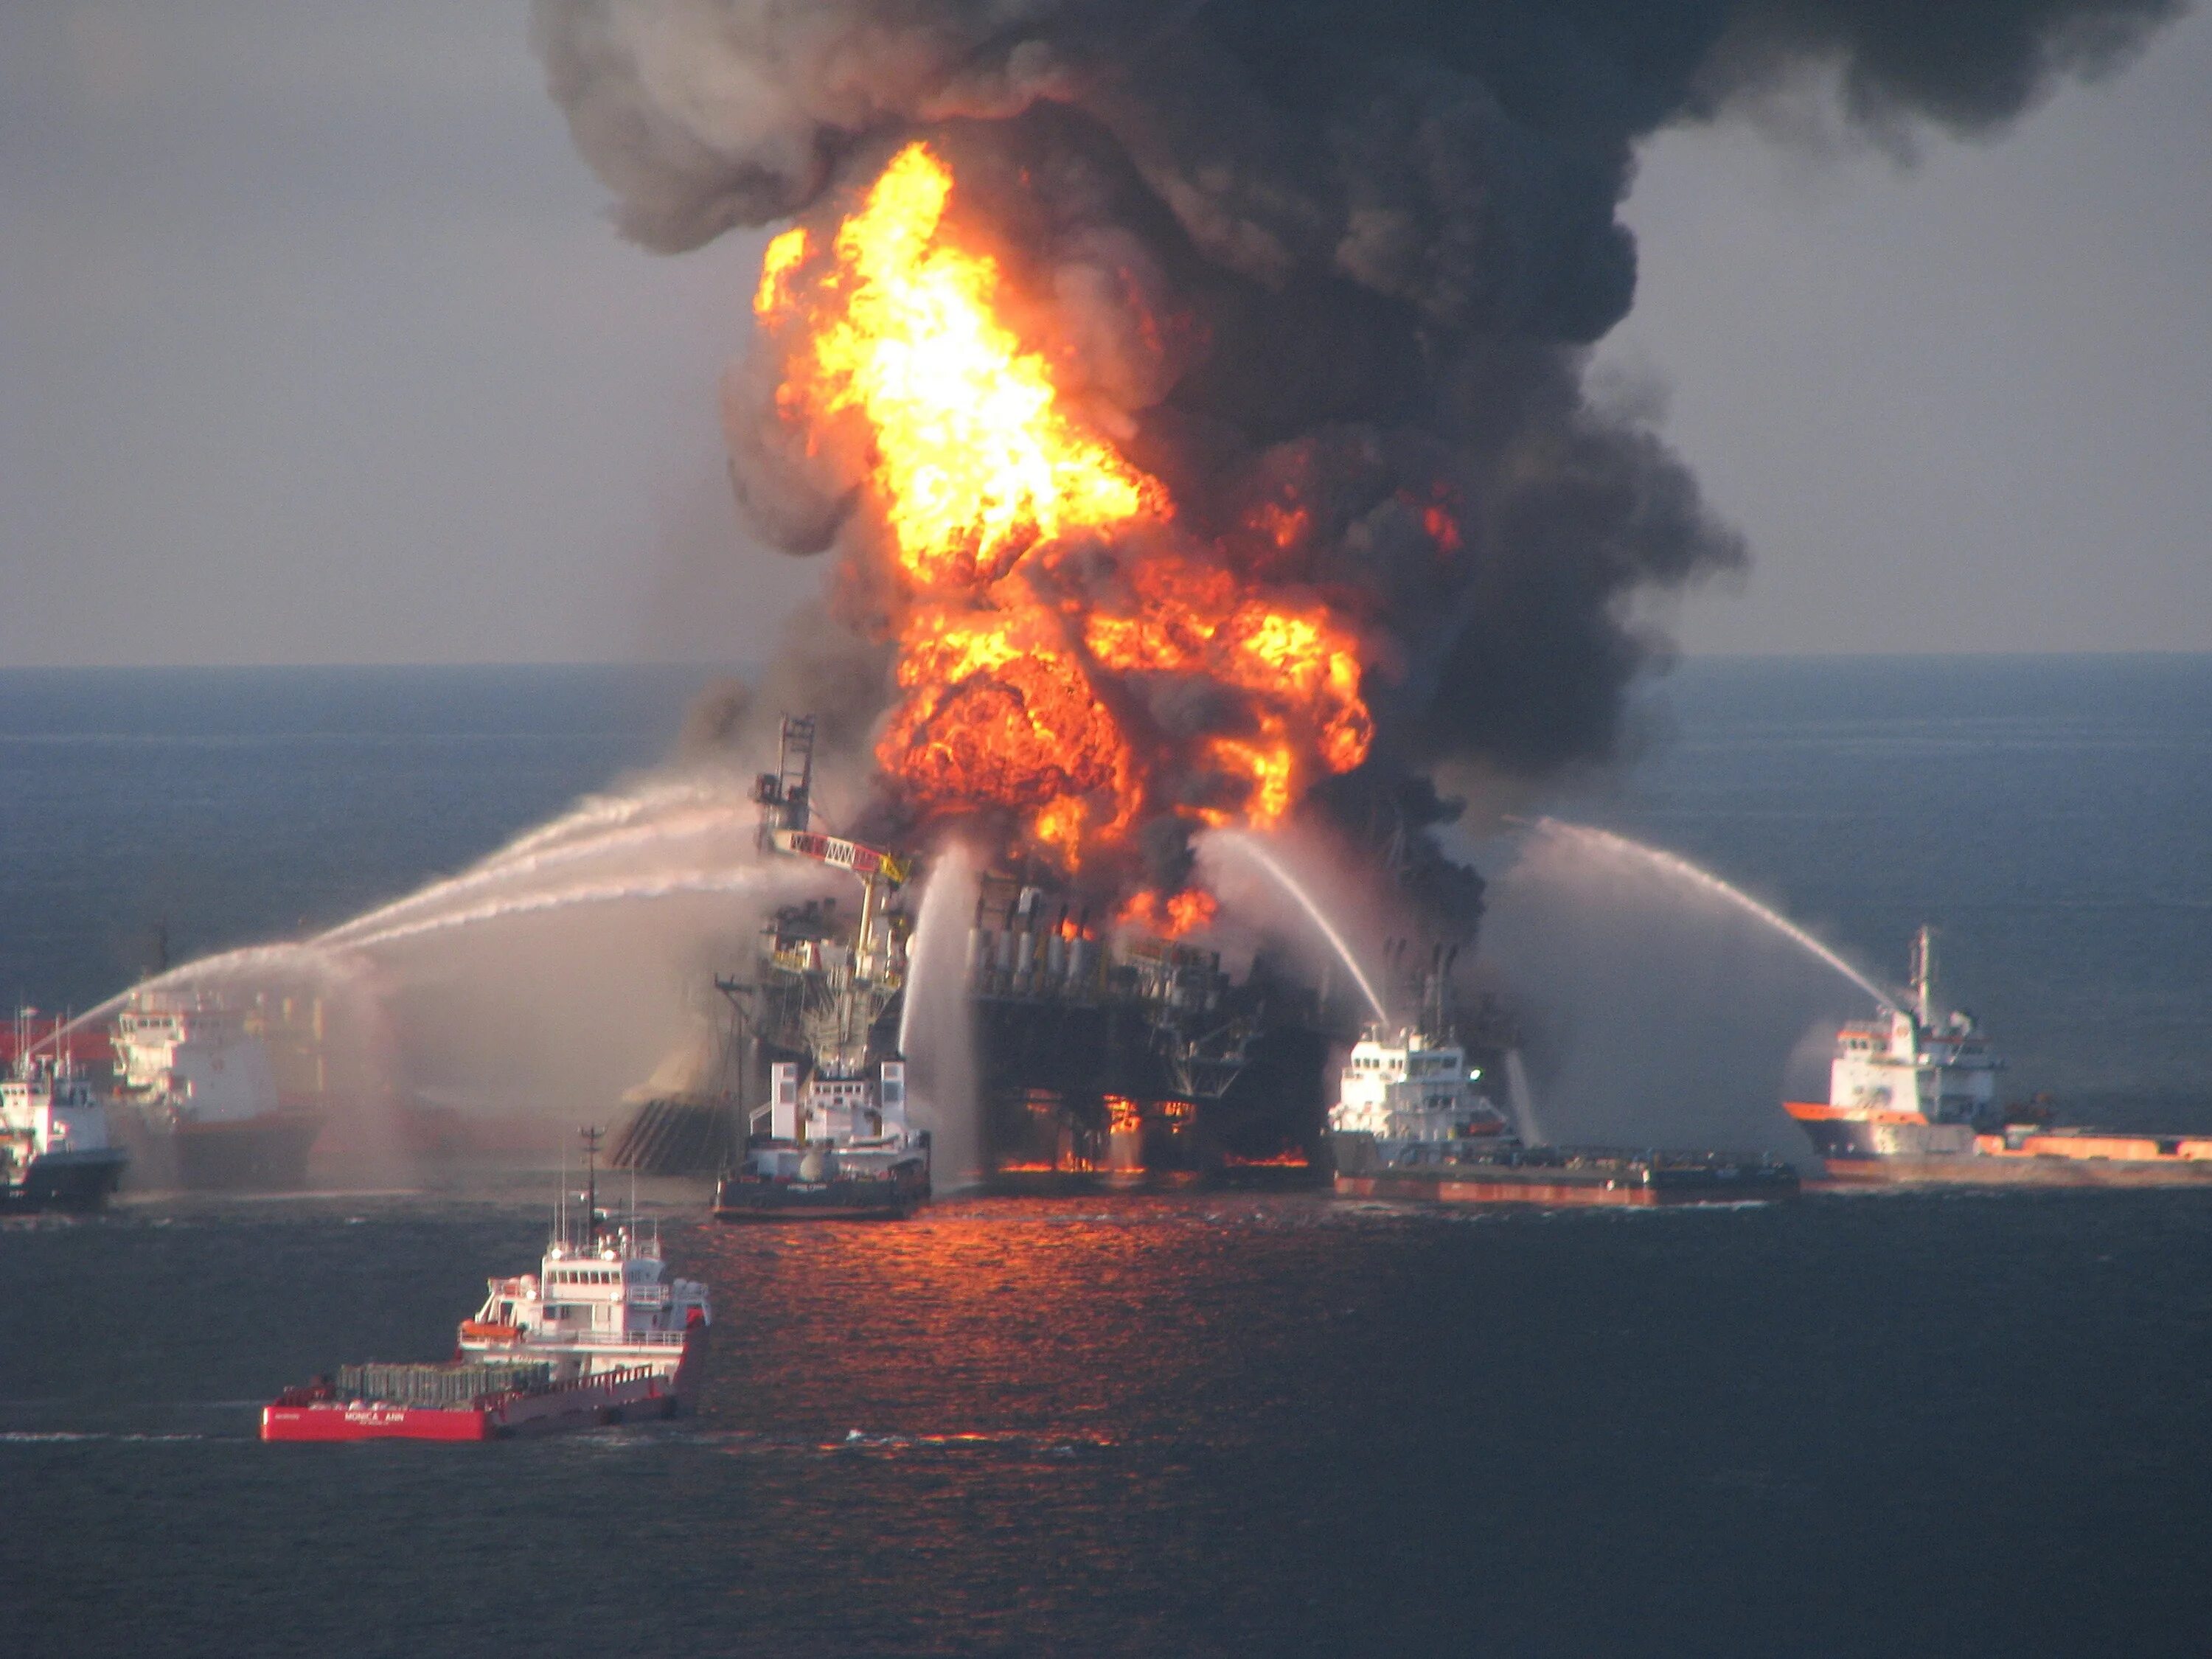 Чп море. Взрыв платформы Deepwater Horizon. Взрыв нефтяной платформы Deepwater Horizon в мексиканском заливе. Взрыв нефтяной платформы Deepwater Horizon в мексиканском заливе 2010. Взрыв в мексиканском заливе авария на нефтяной платформе Deepwater Horizon.